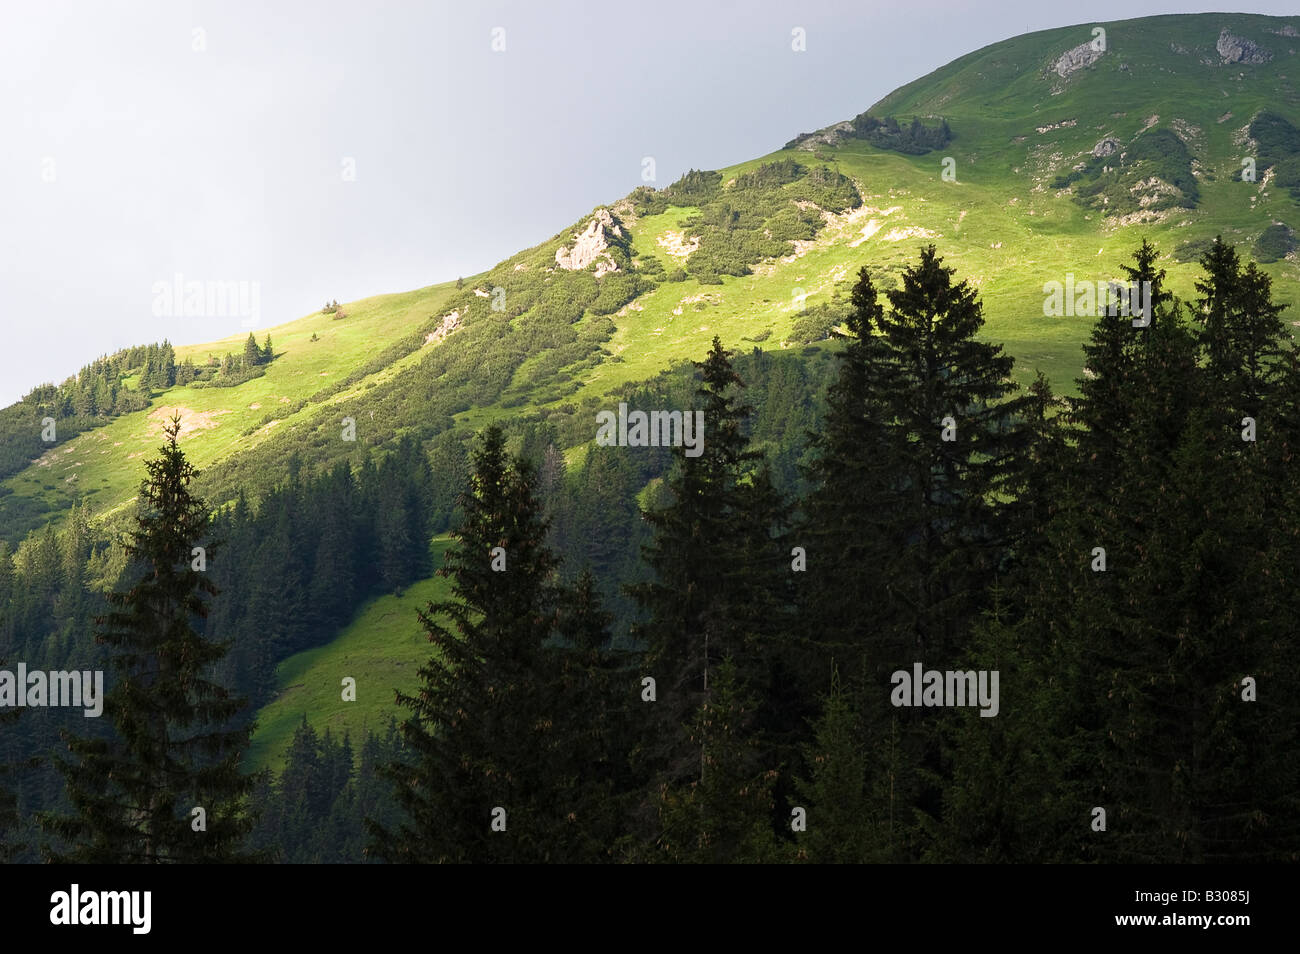 Mountain alps, near Baad, Kleinwalsertal, Austria Stock Photo